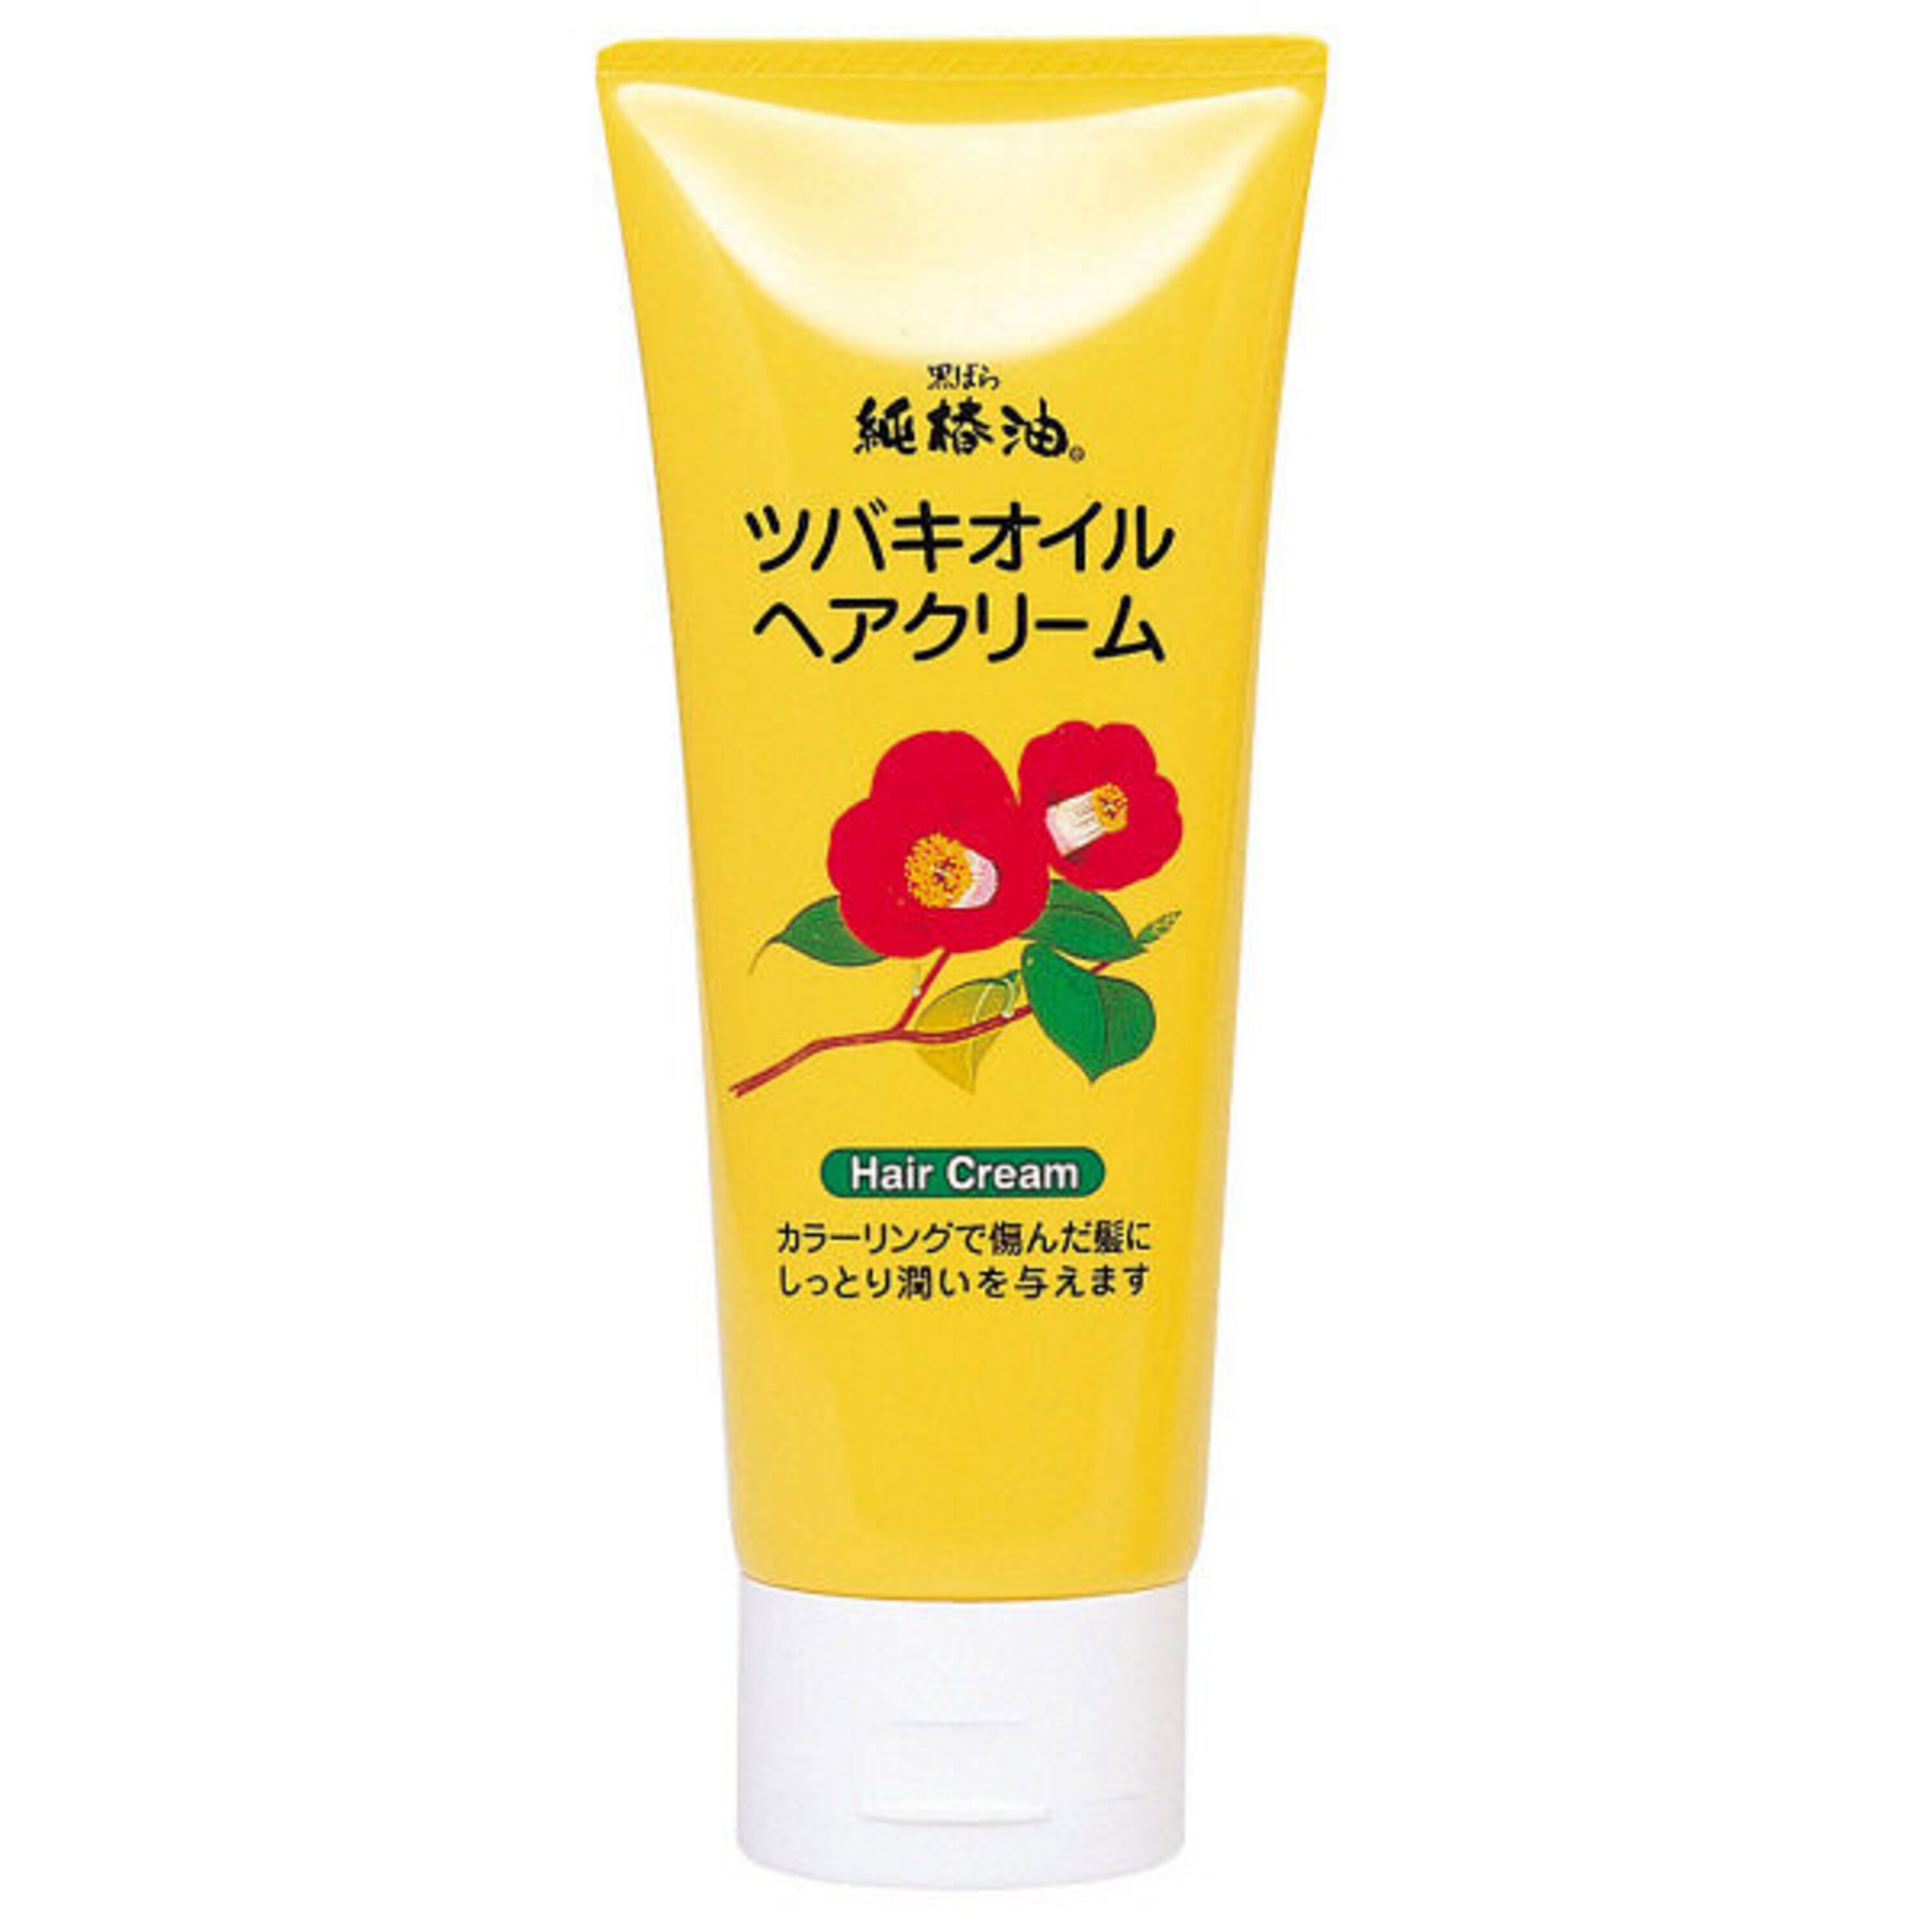 Kurobara Tsubaki Oil маска для поврежденных волос. Маски для волос японские показать. Японские маски для волос Tsubaki. Hair pack маска